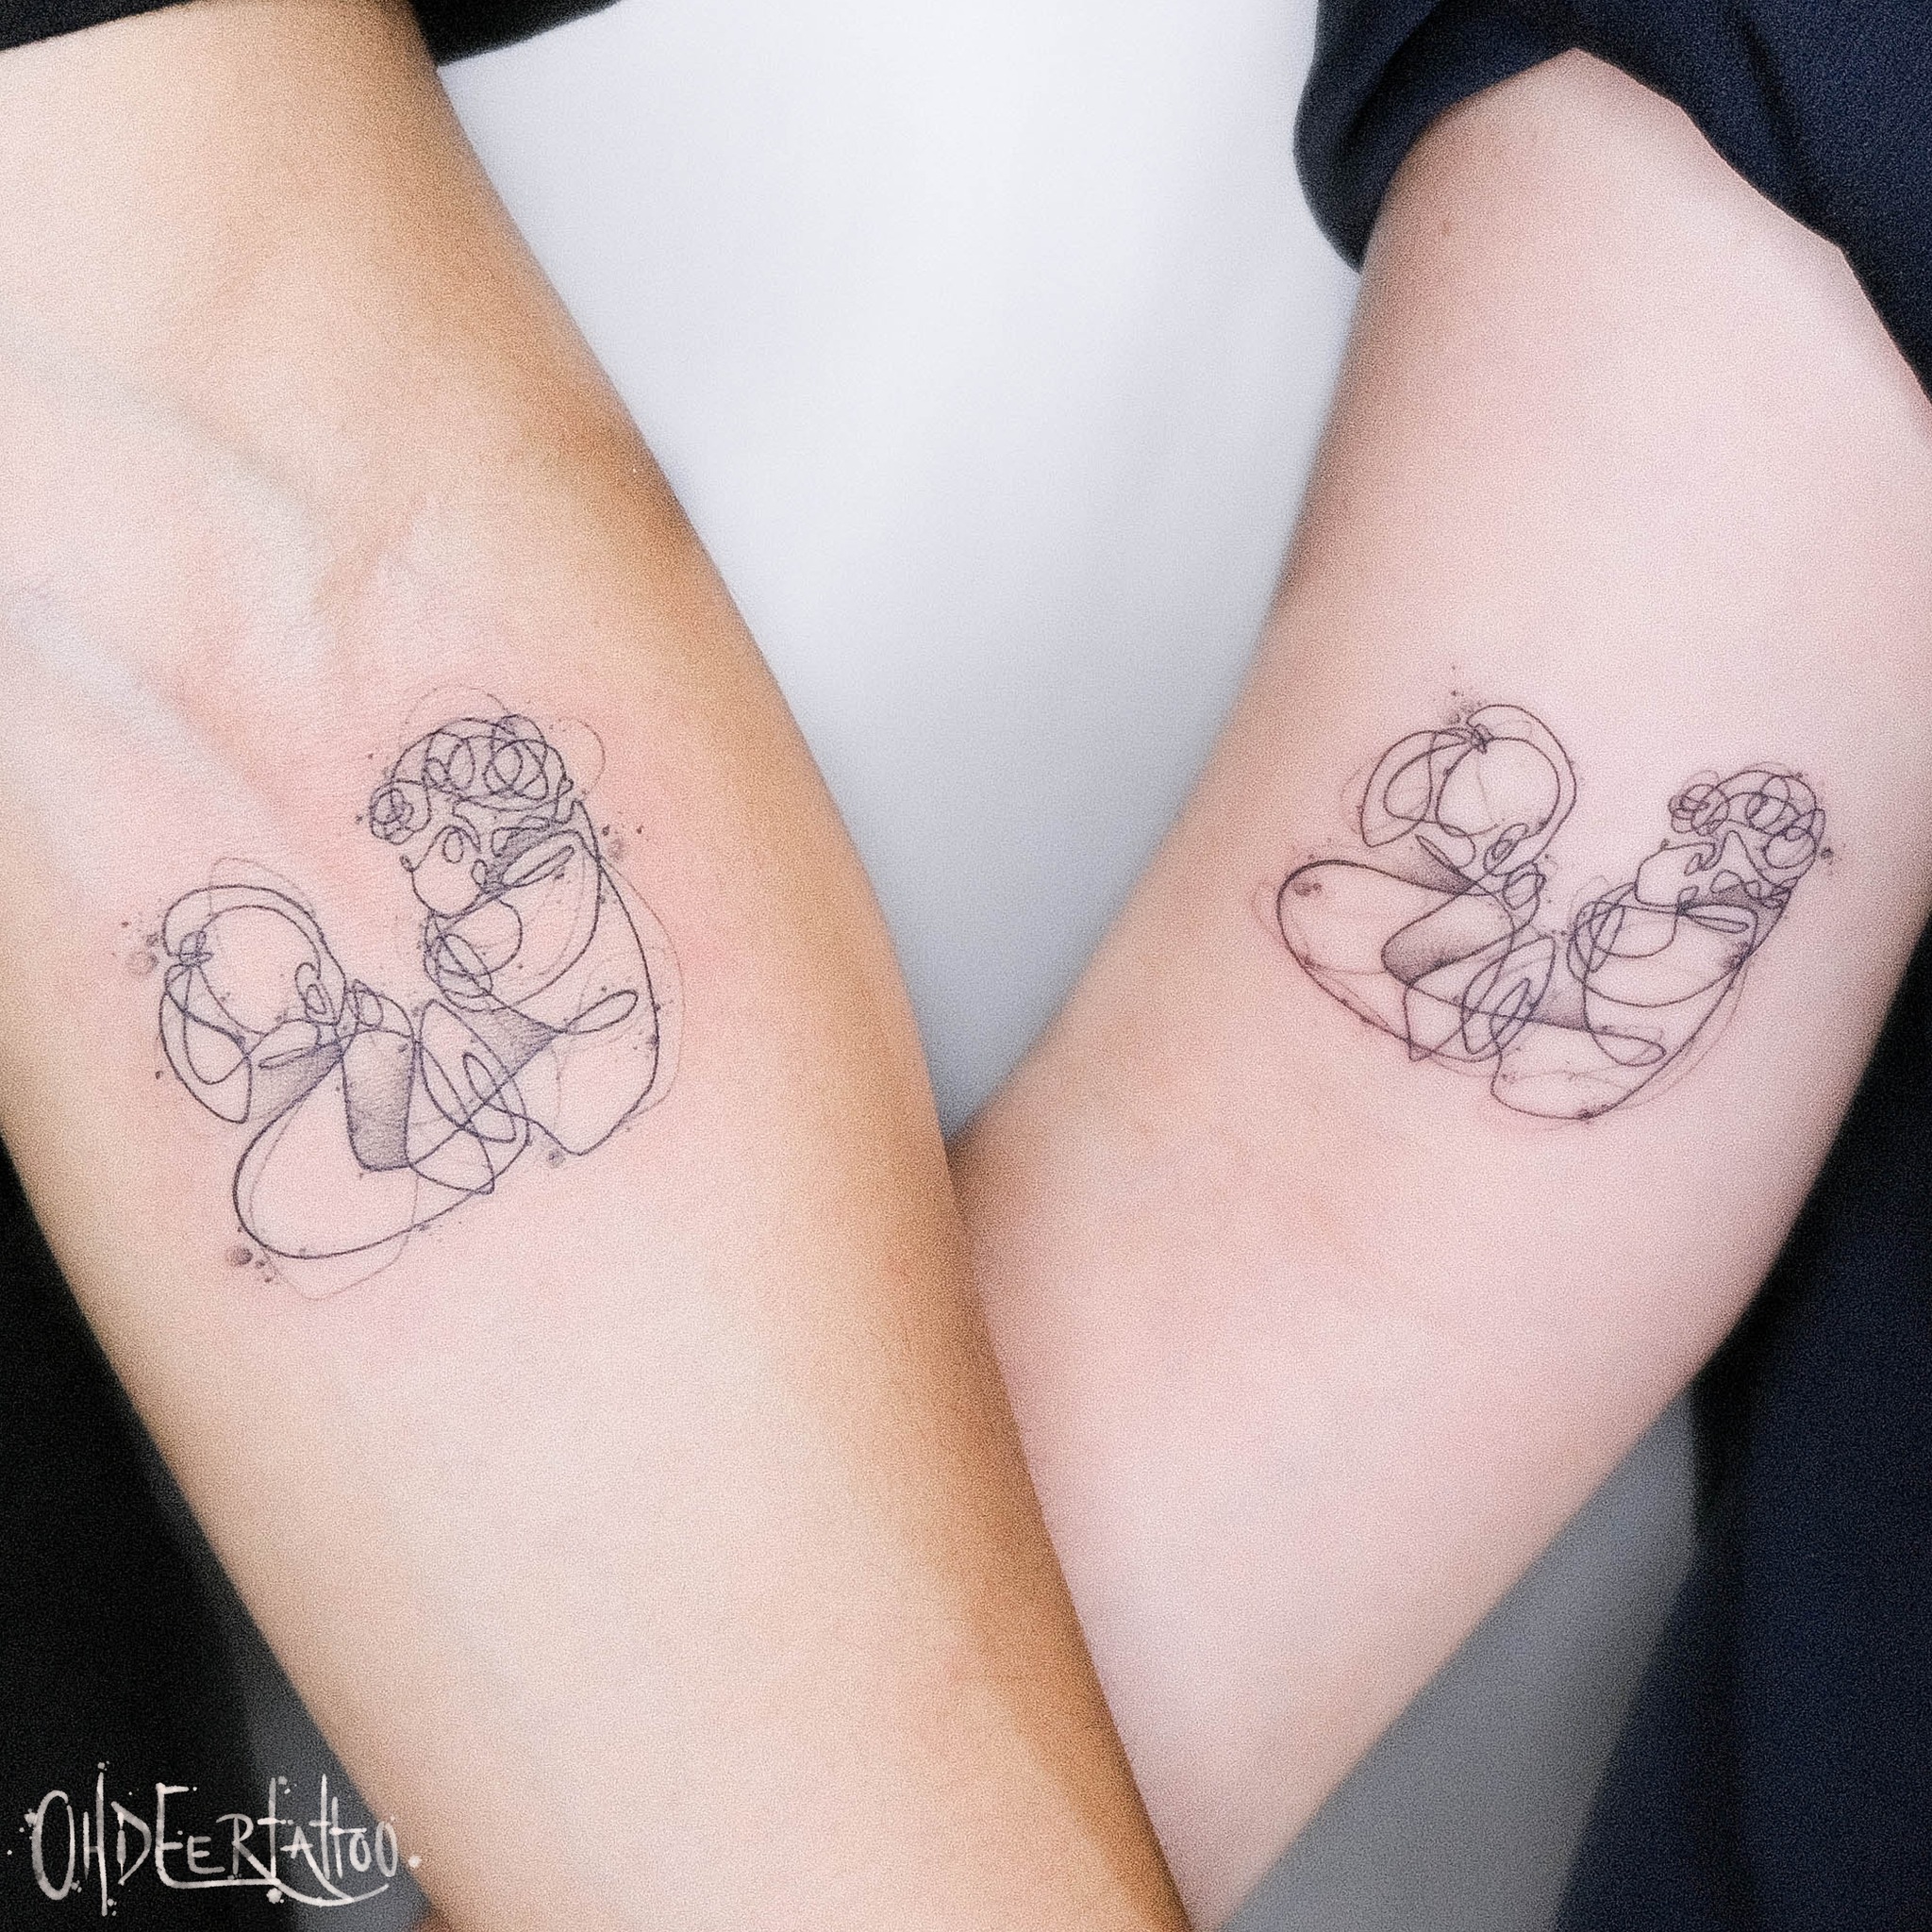 Global Tattoo Studio - Couple tattoos... Anniversary date in roman numerals  ❤️25.7.18❤️. . #tattoo #matchingtattoos #coupletattoo #couplesgoals #ink  #tattoos_of_instagram #relationshipgoals #relationshiptattoo #coupletattoo  #coupletattoos ...